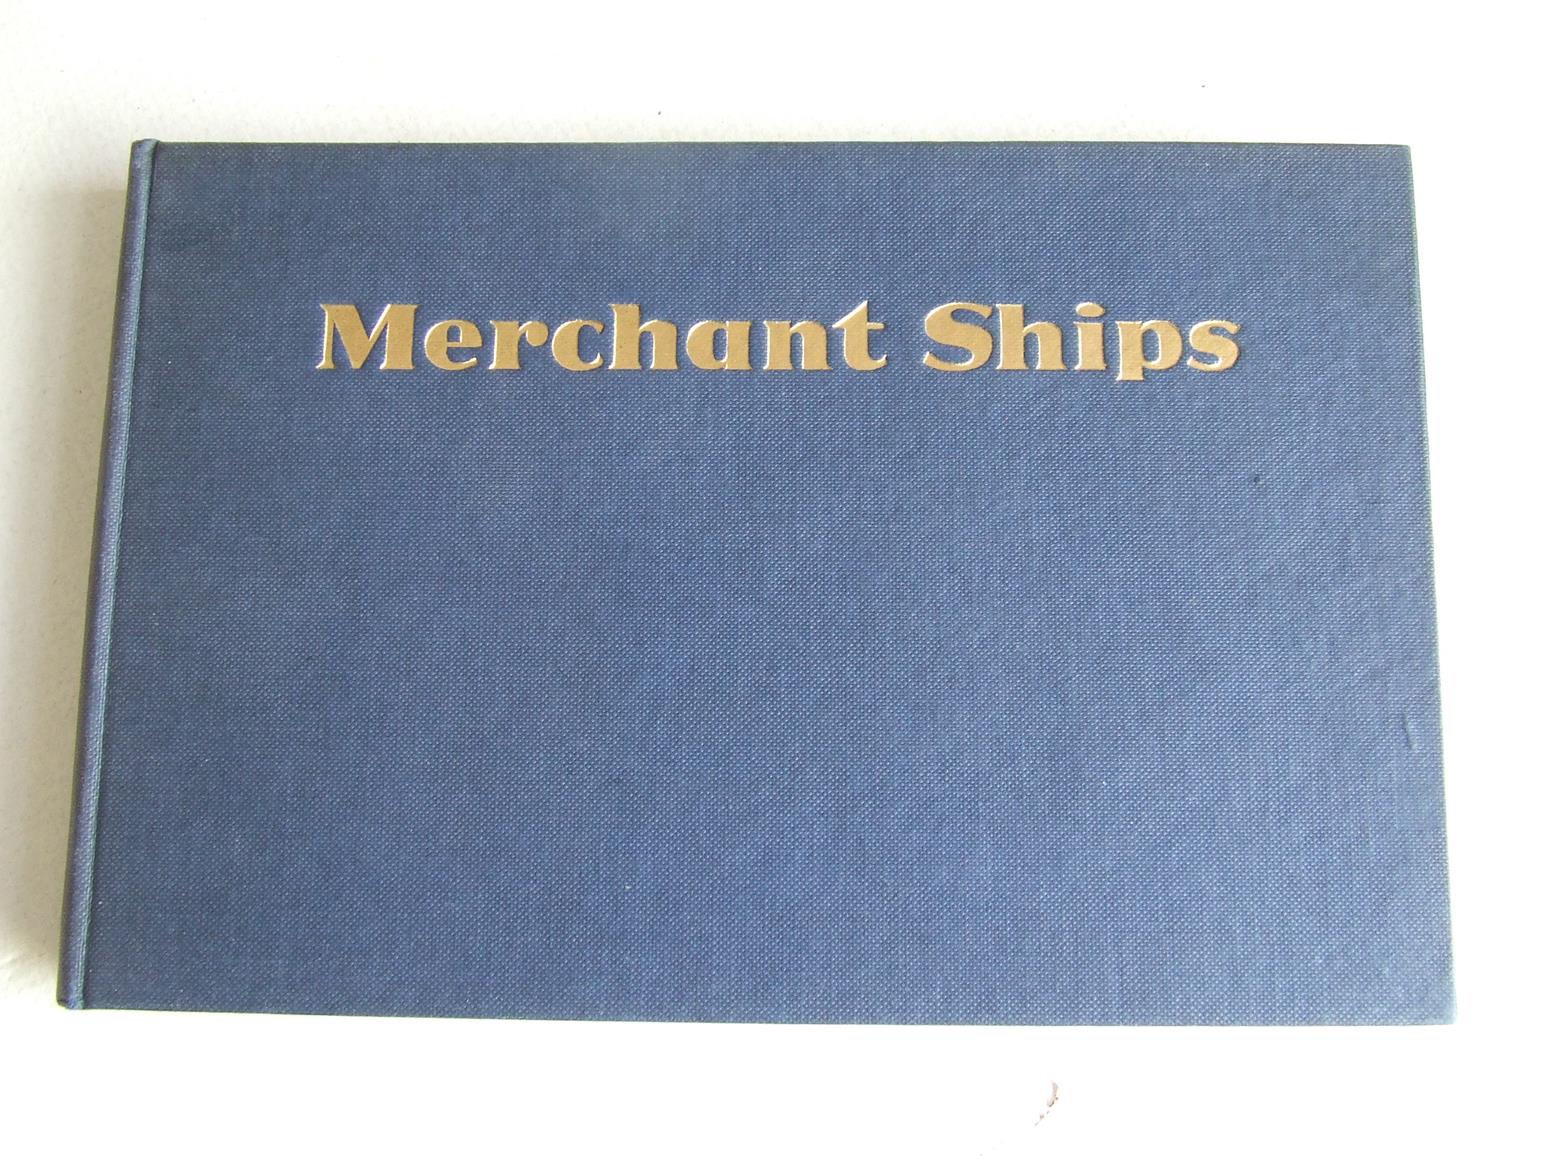 Merchant Ships: World Built